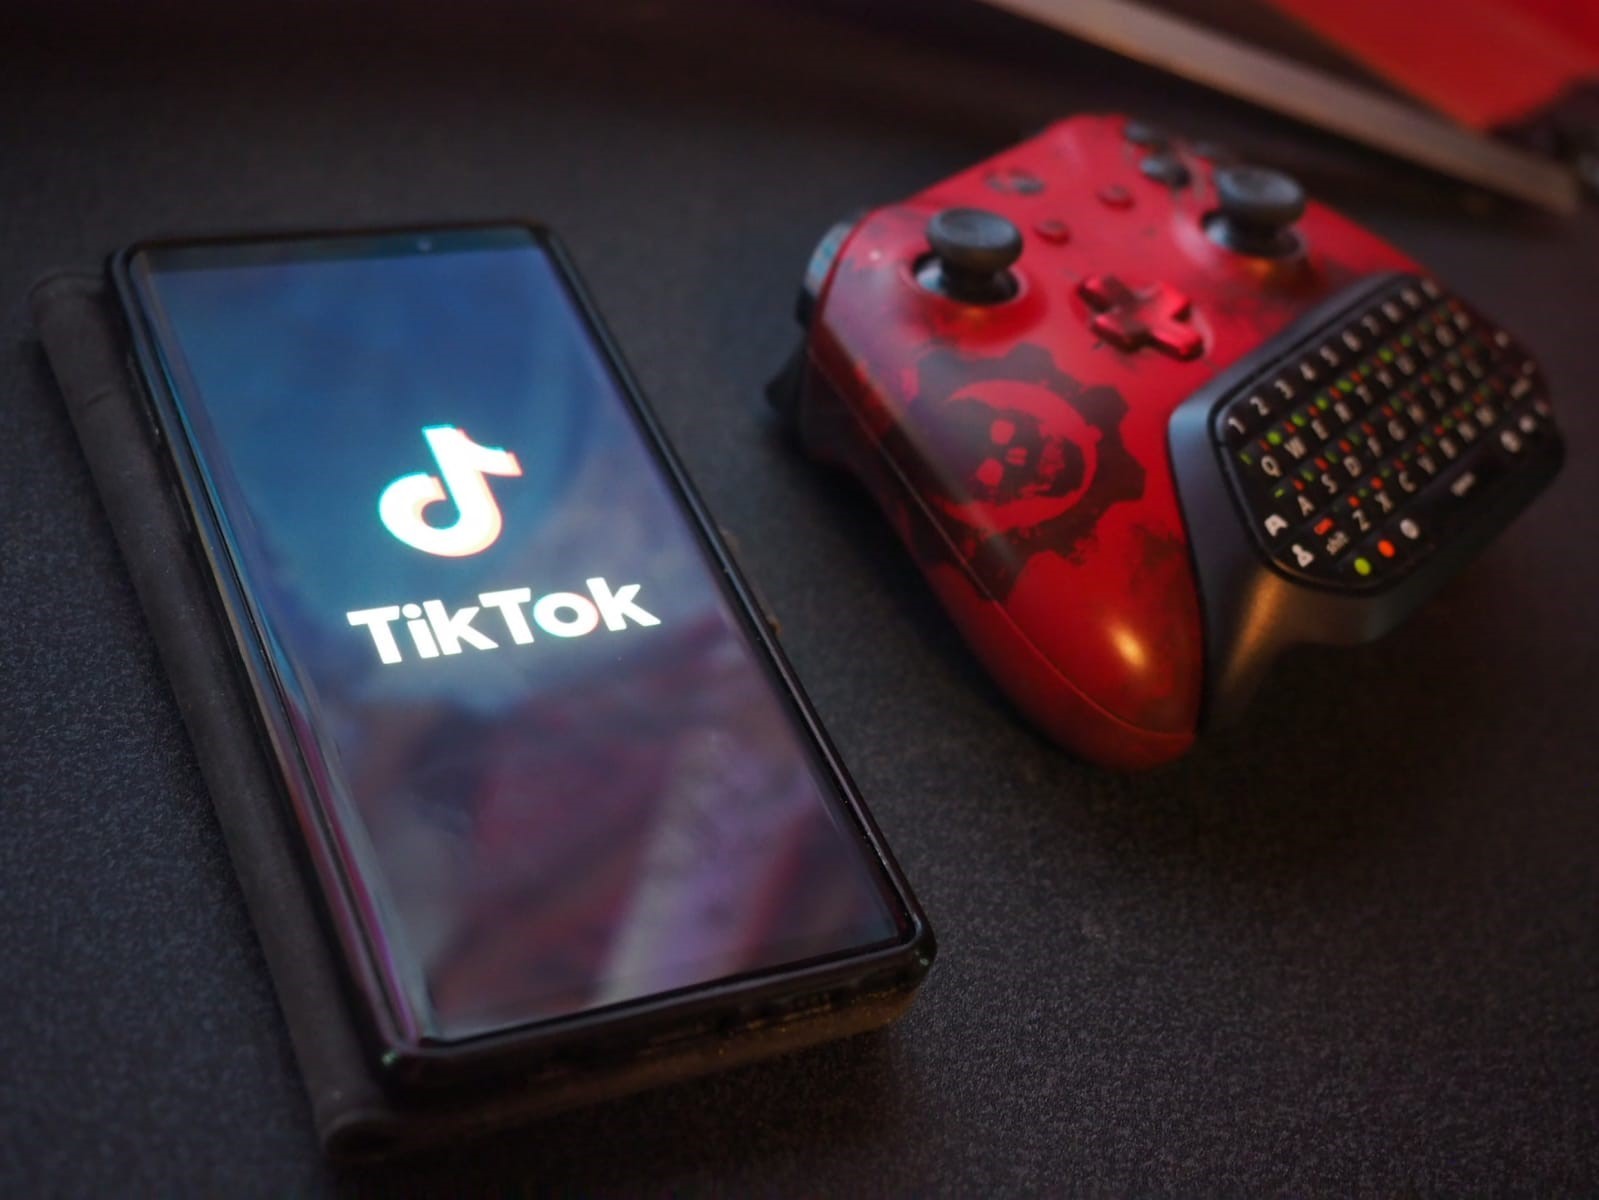 Телефон с логотипом ТикТок лежит рядом с приставкой